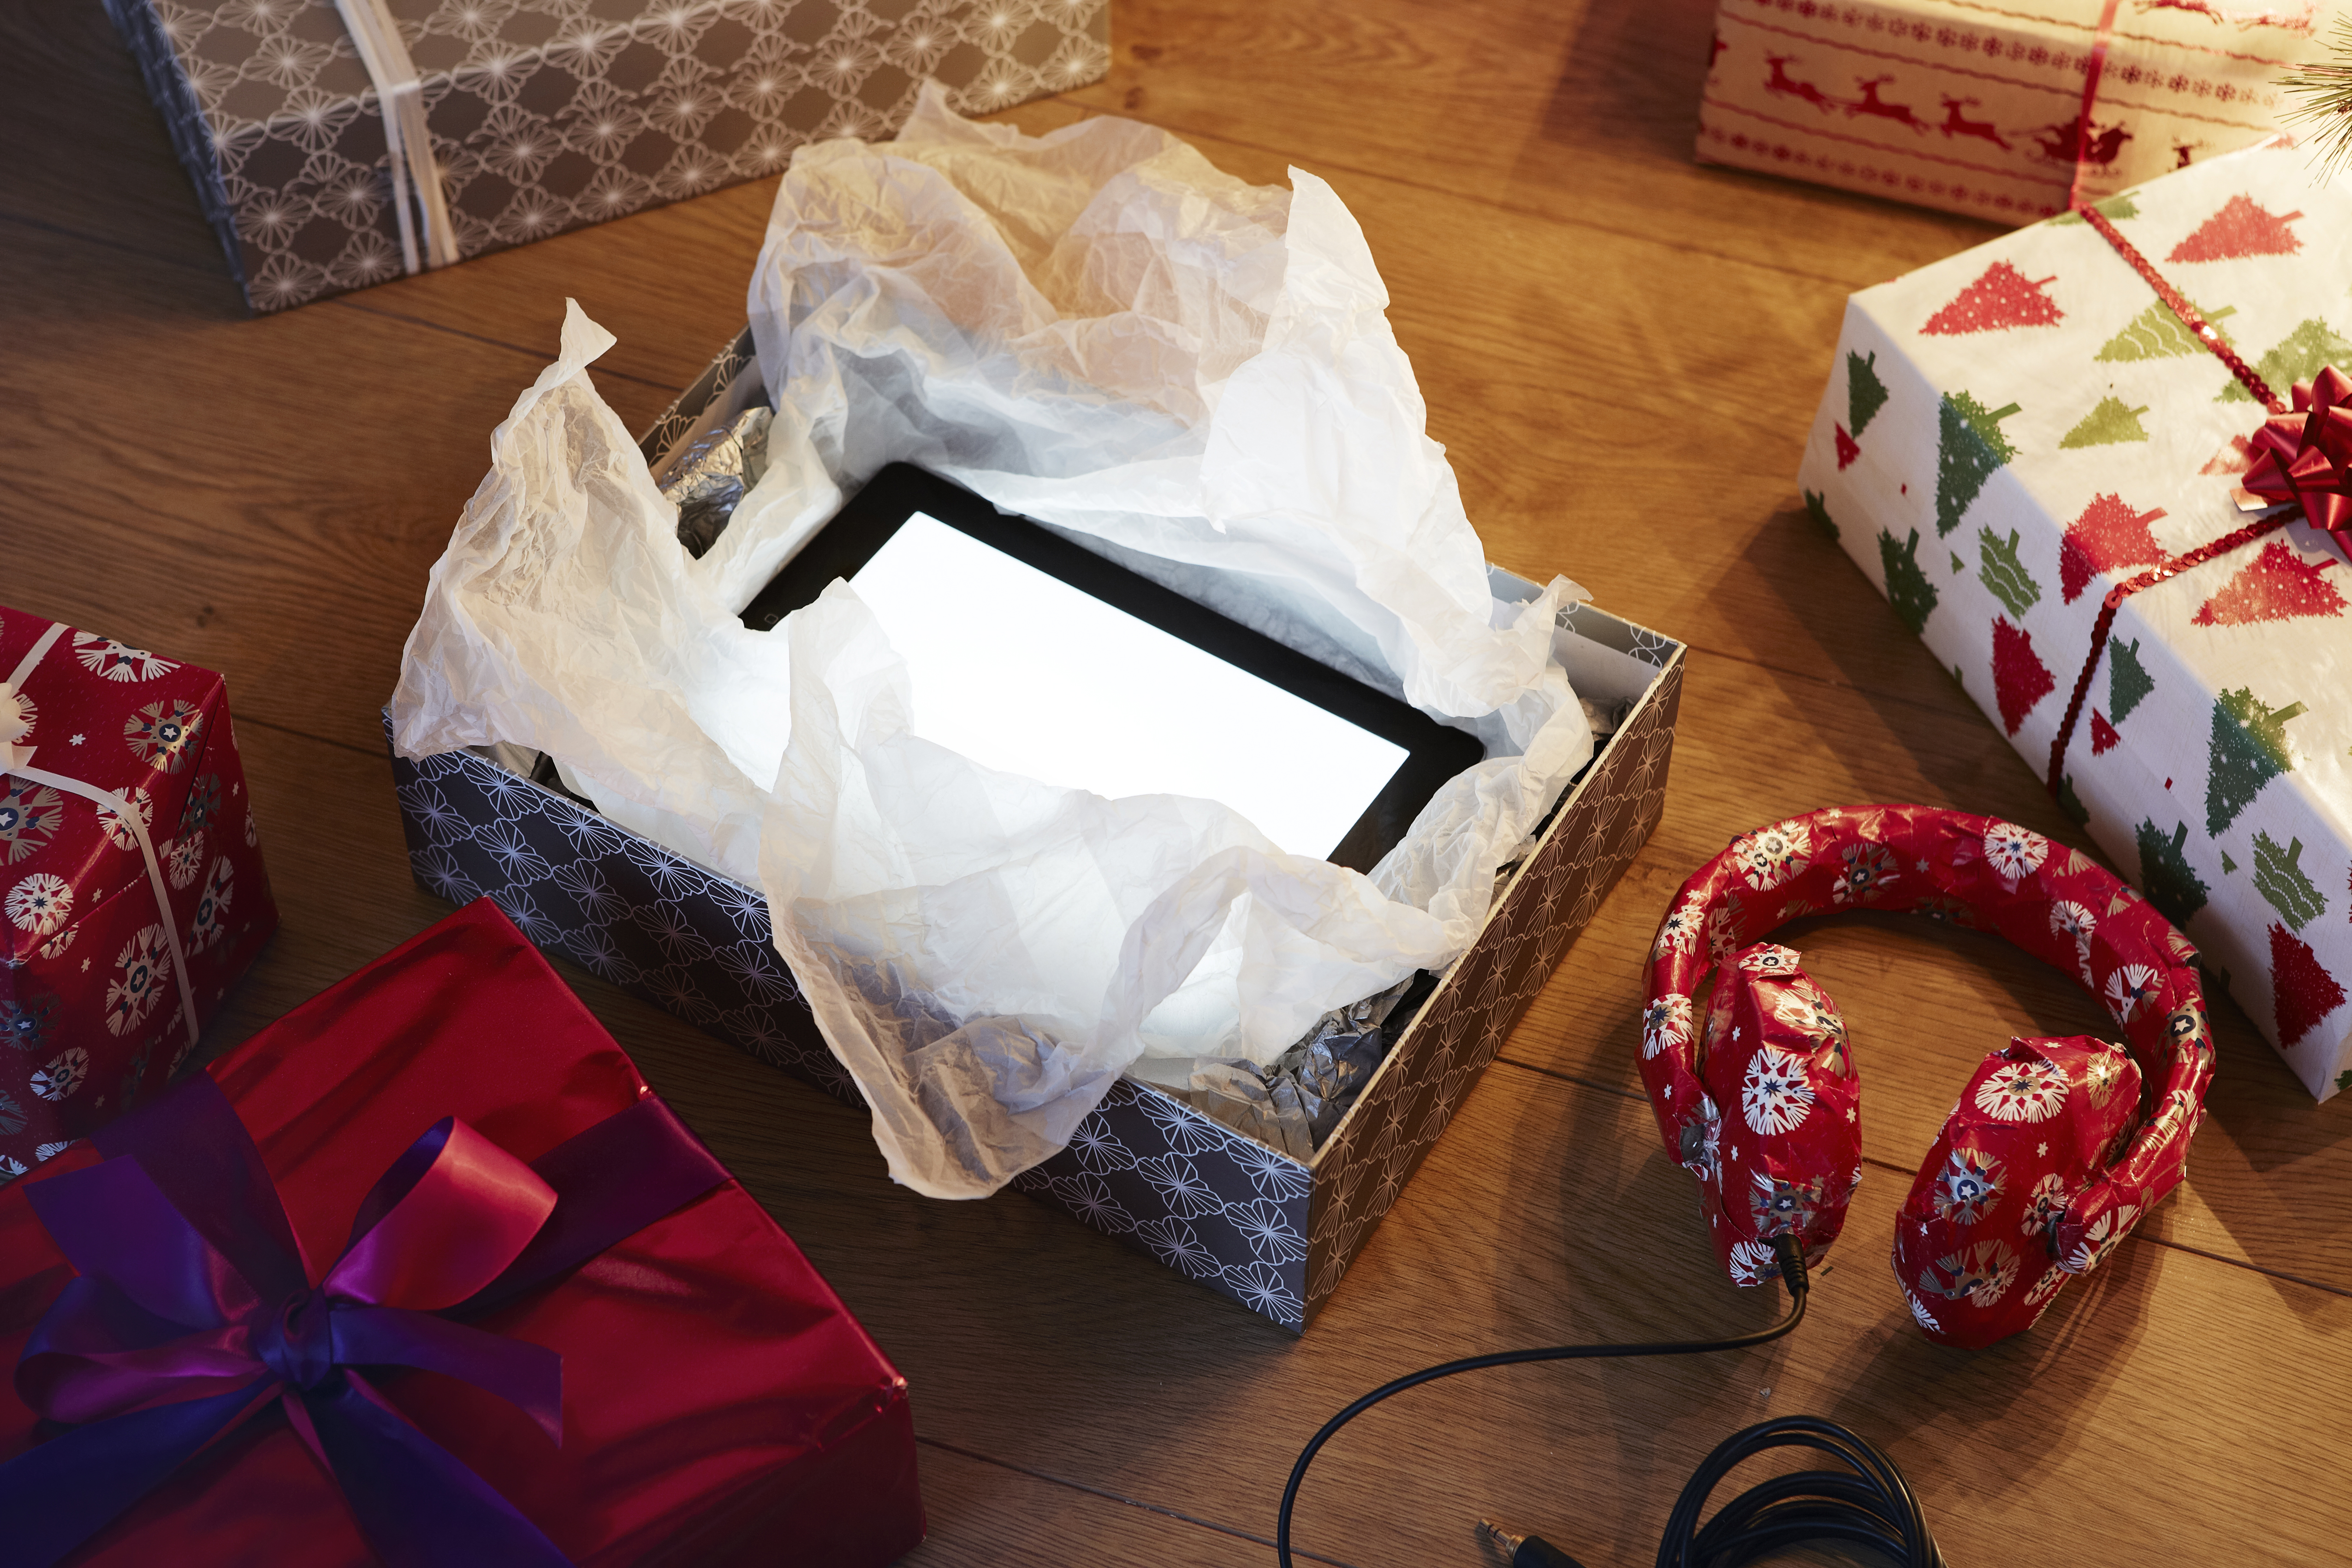 Un cadeau de Noël déballé révélant une tablette informatique | Source : Getty Images